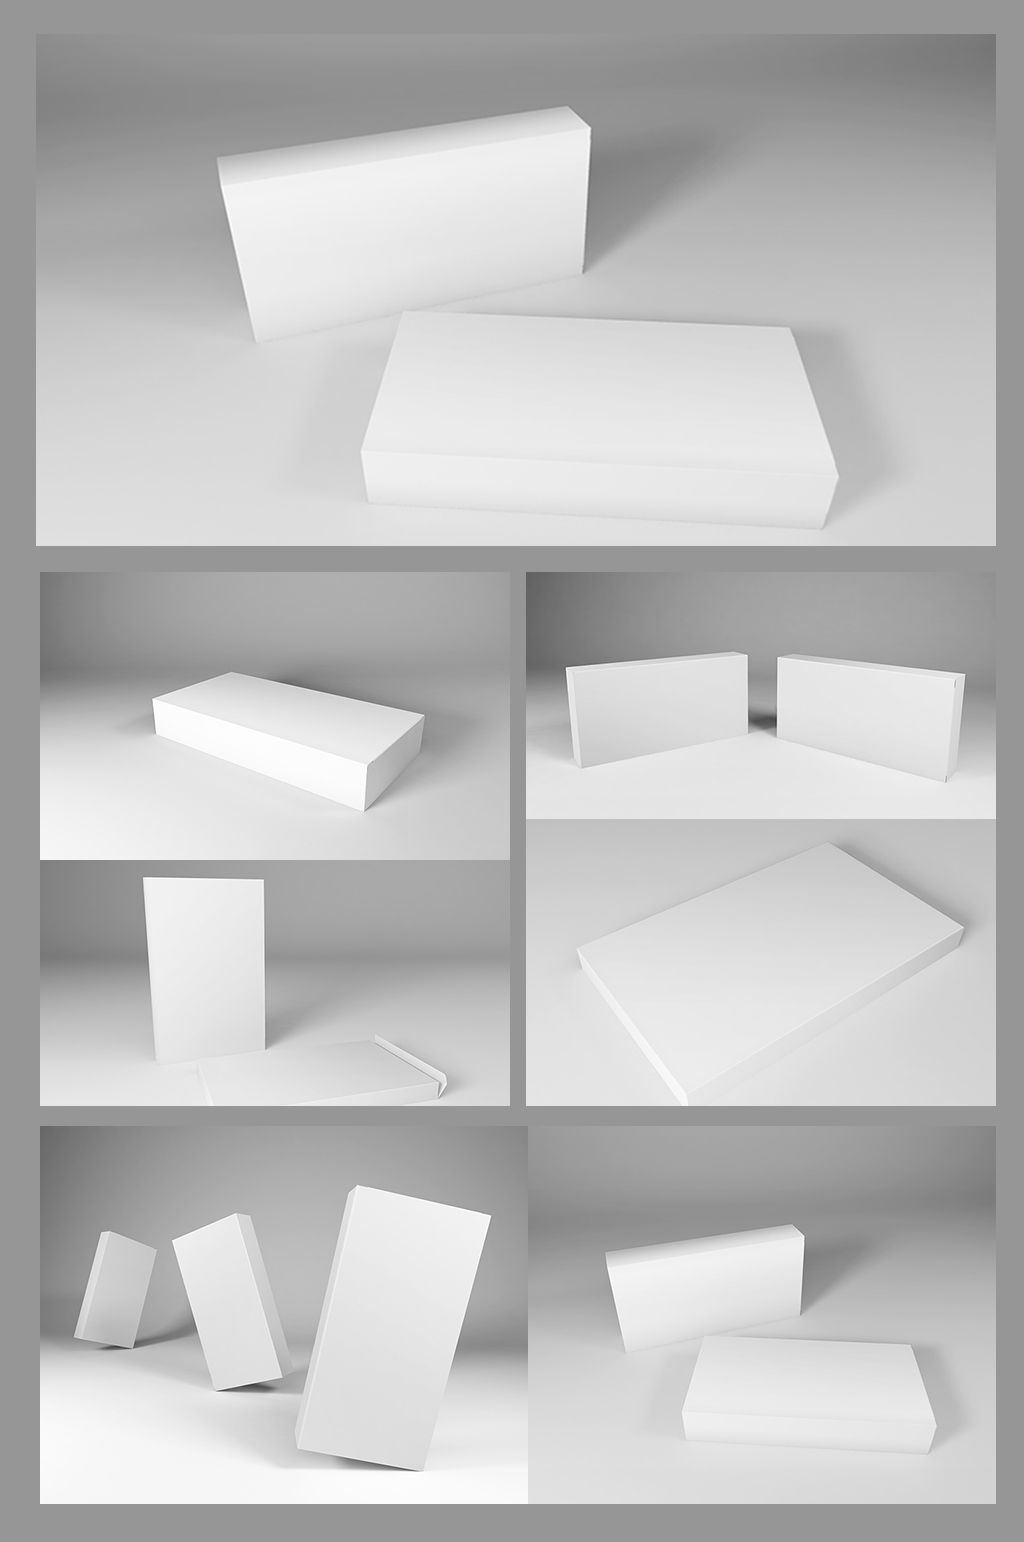 长方形纸盒模型样机图片